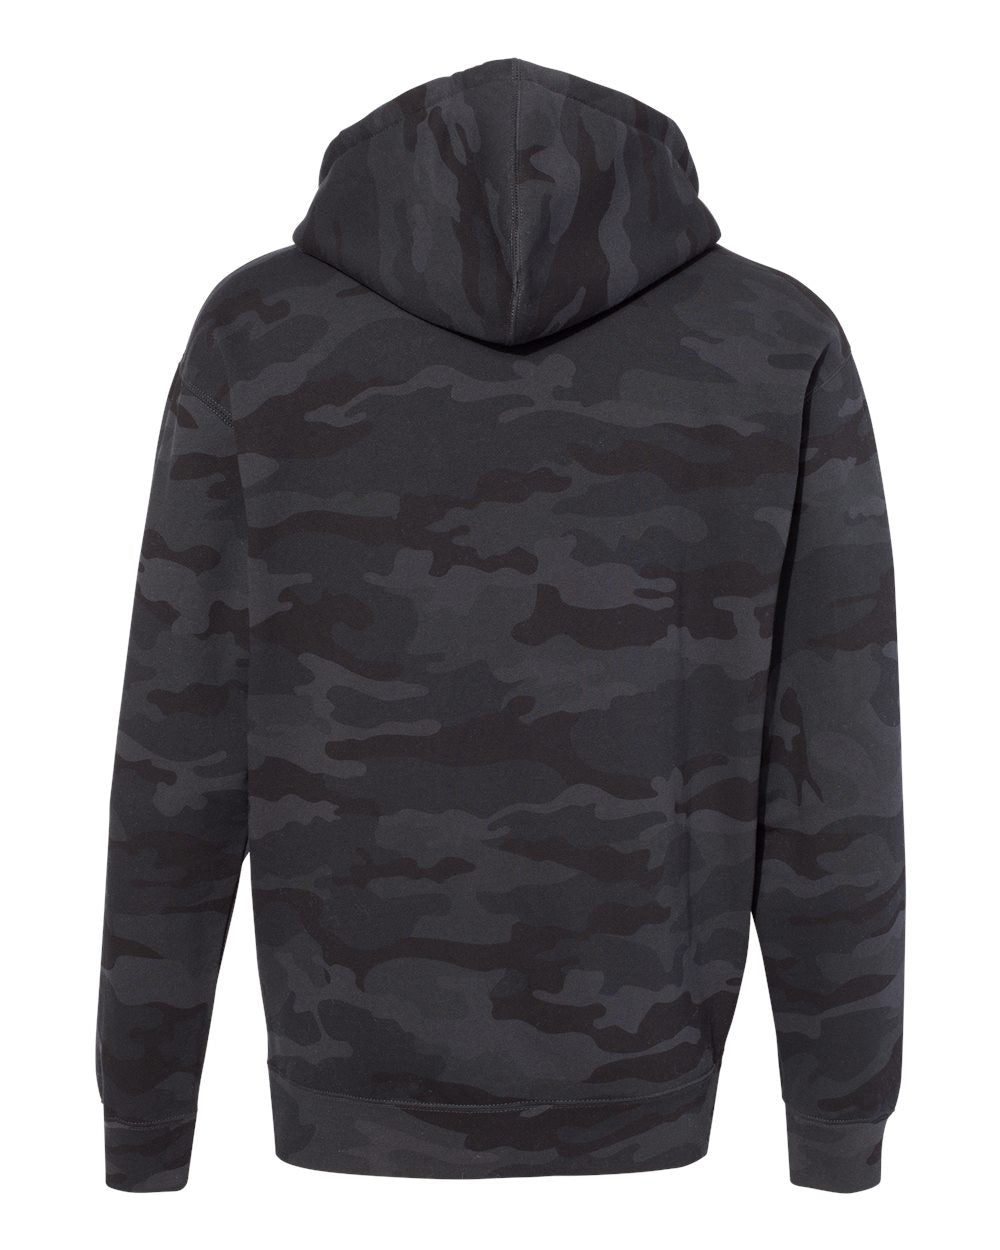 camo hoodie, black camo hoodie, black camo shirt, black camo